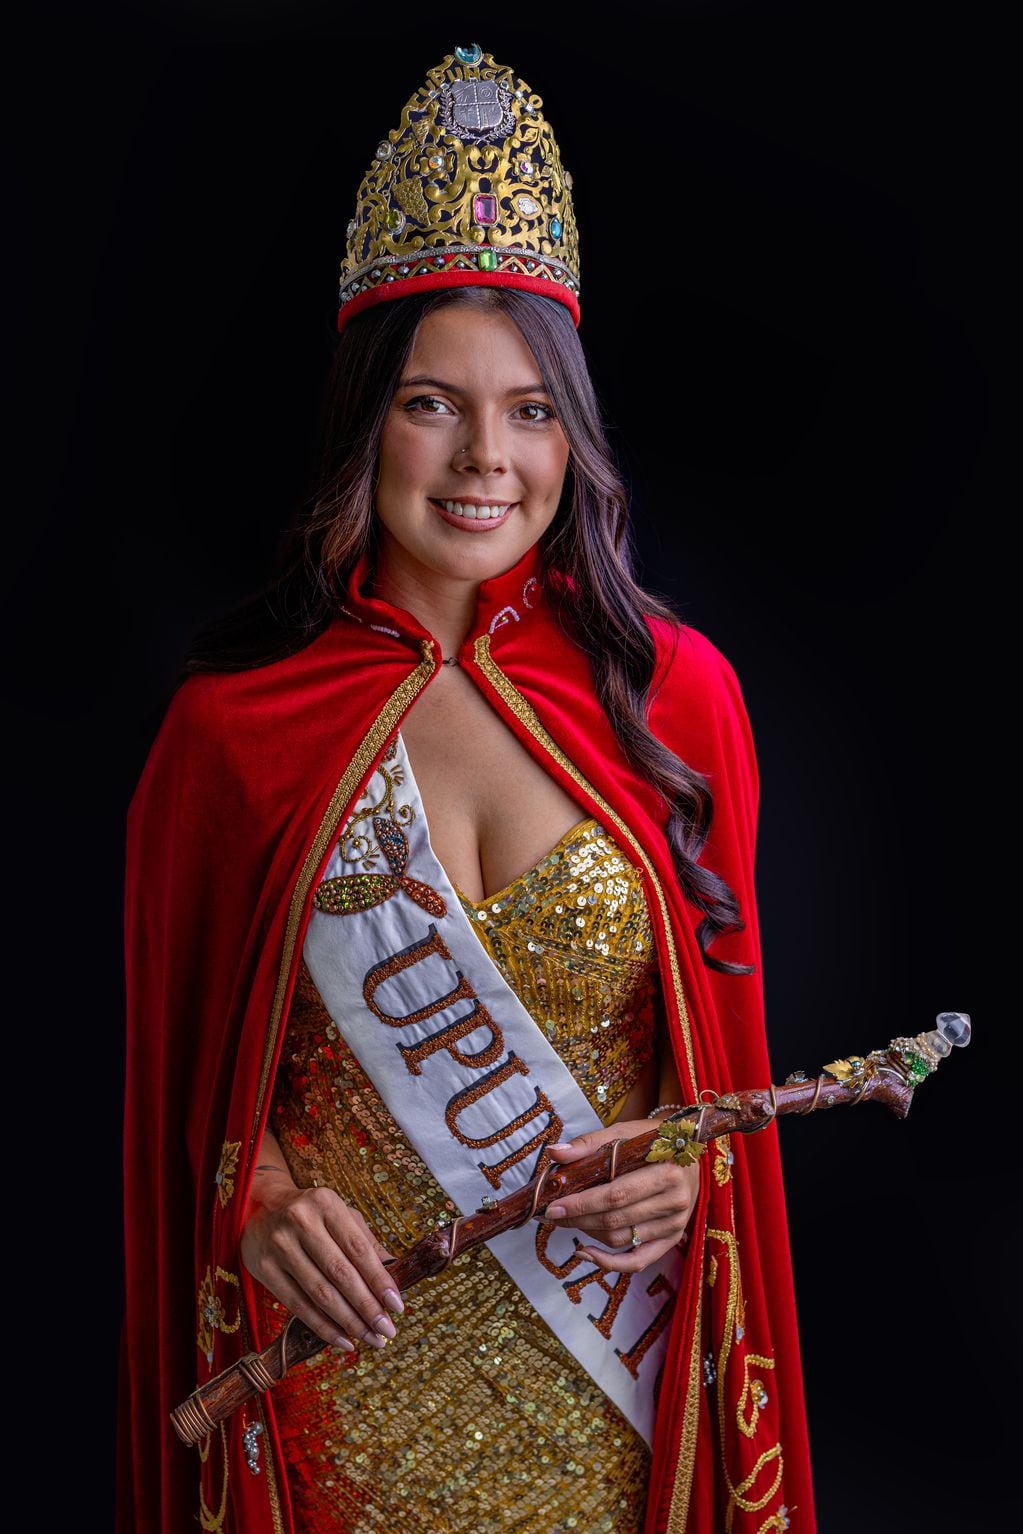 La candidata tupungatina, Valentina Ortiz, dice que le gusta el costado social del ser reina.